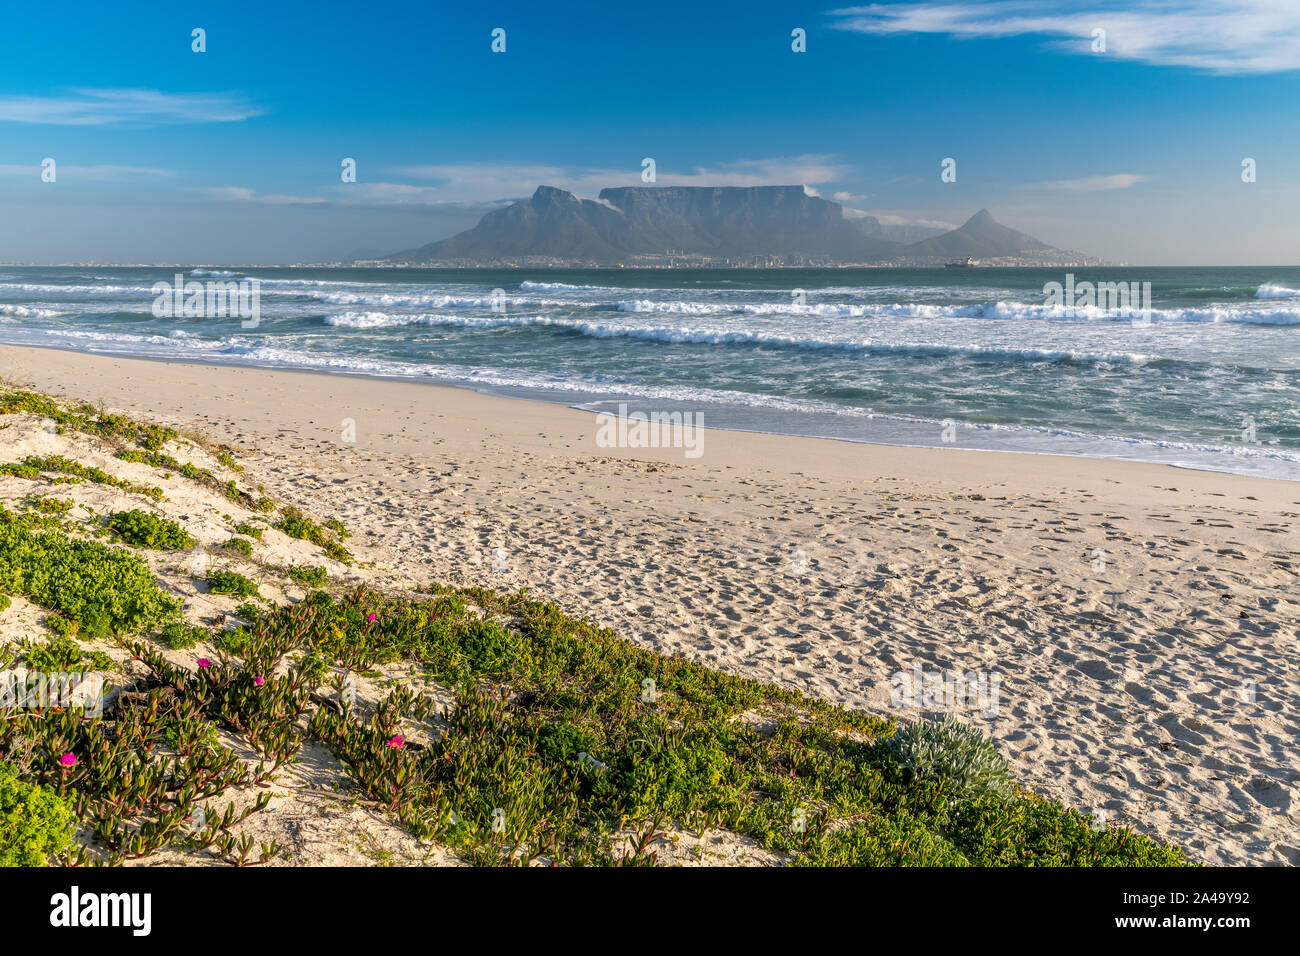 Bloubergstrand plage avec en arrière-plan la Montagne de la Table, Cape Town, Western Cape, Afrique du Sud Banque D'Images